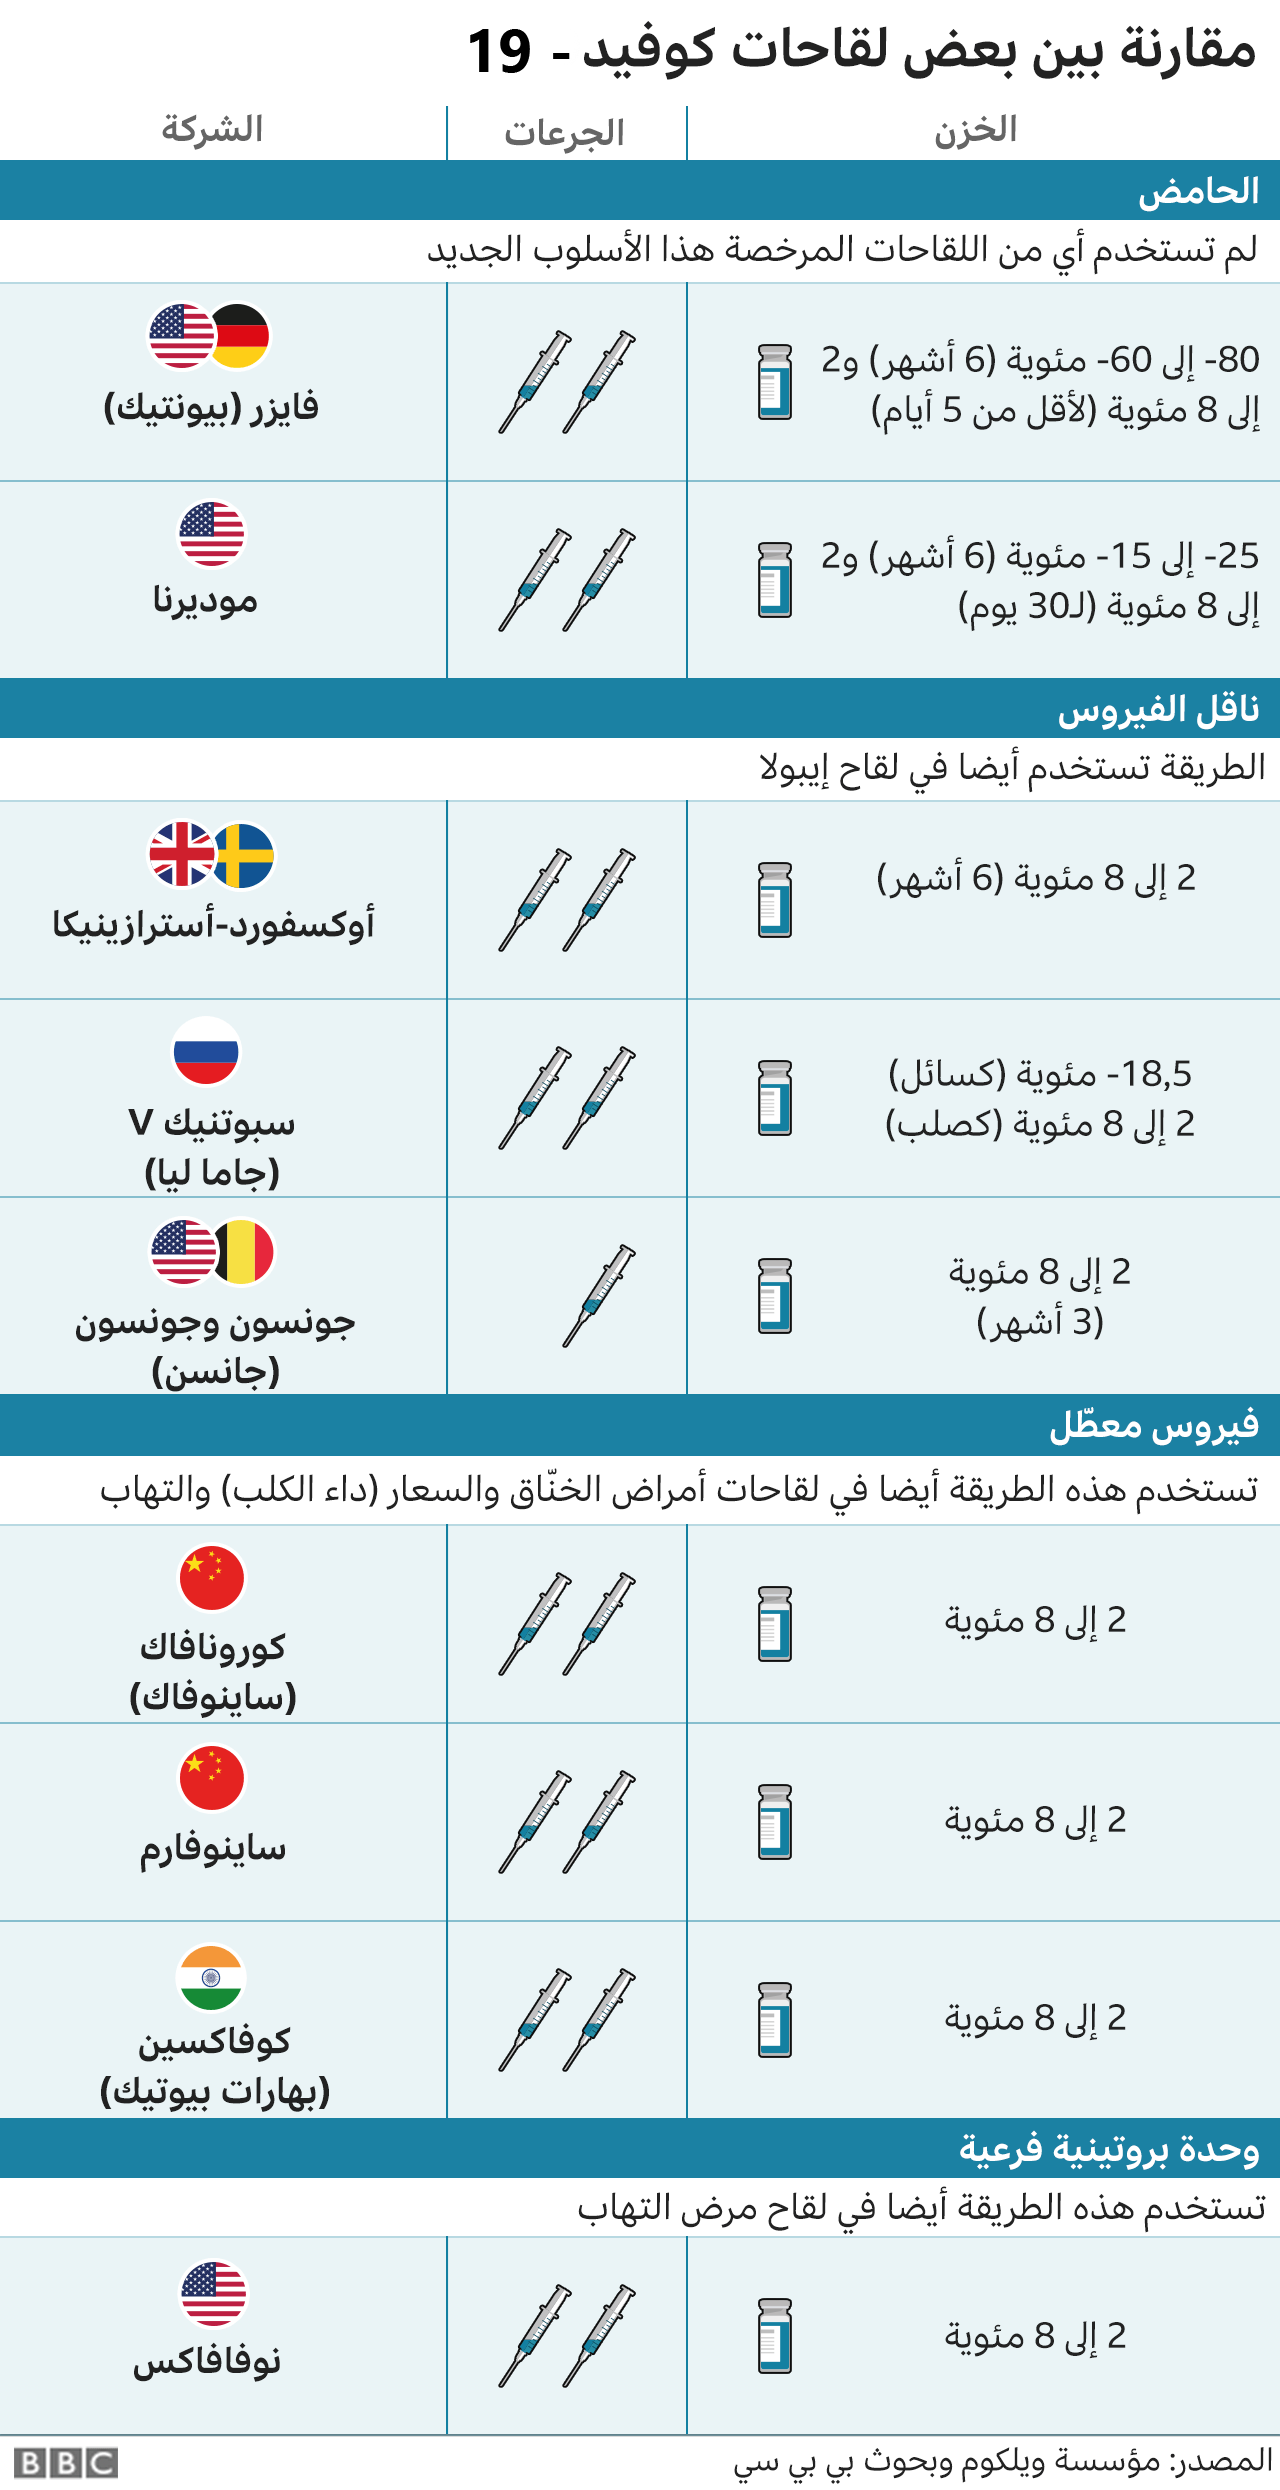 اعتماد اللقاح في السعودية